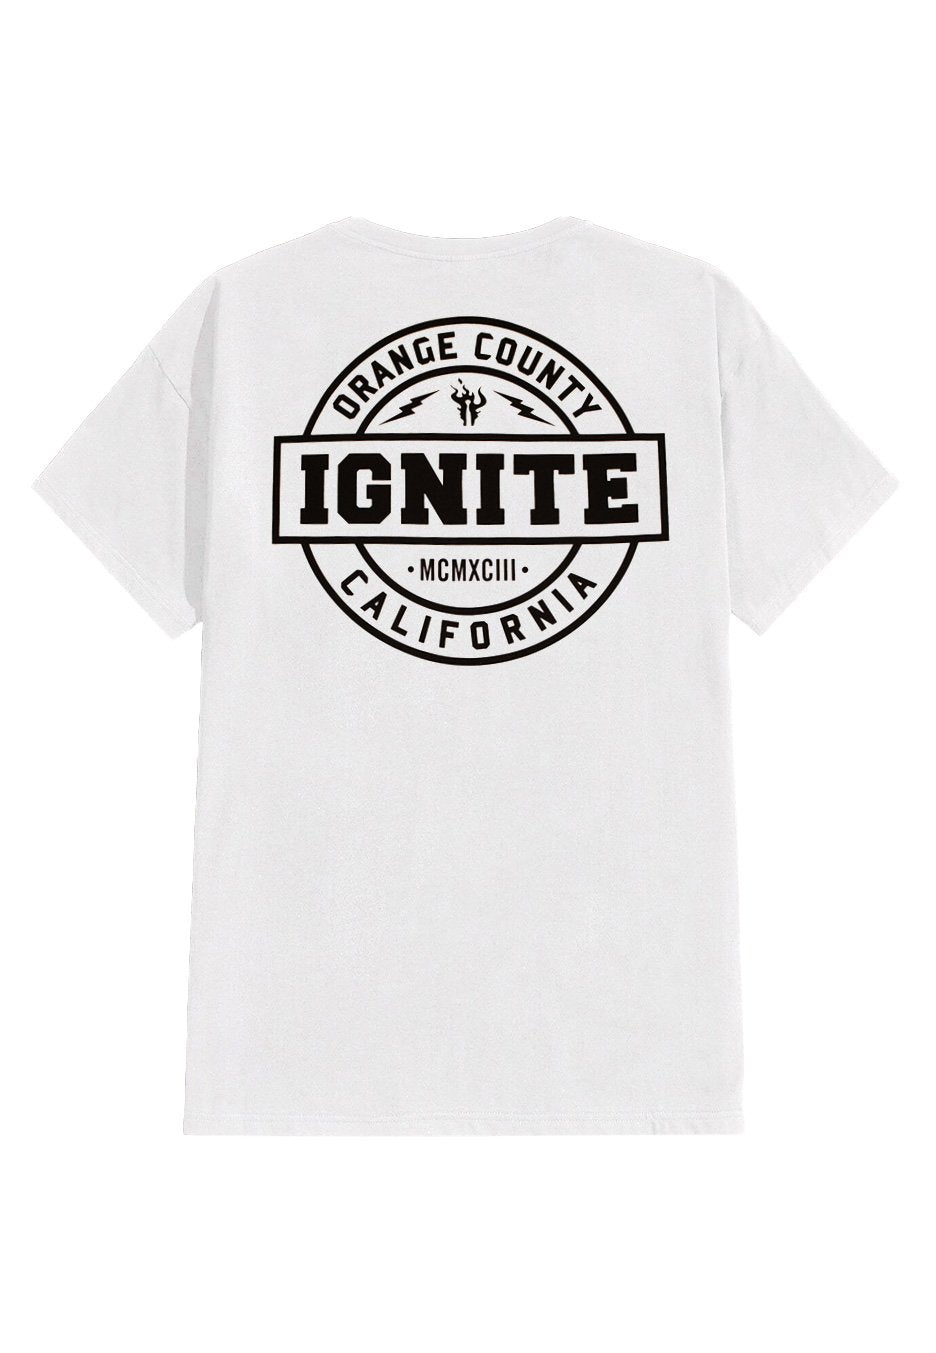 Ignite - New Lightning Flame Pocket White - T-Shirt